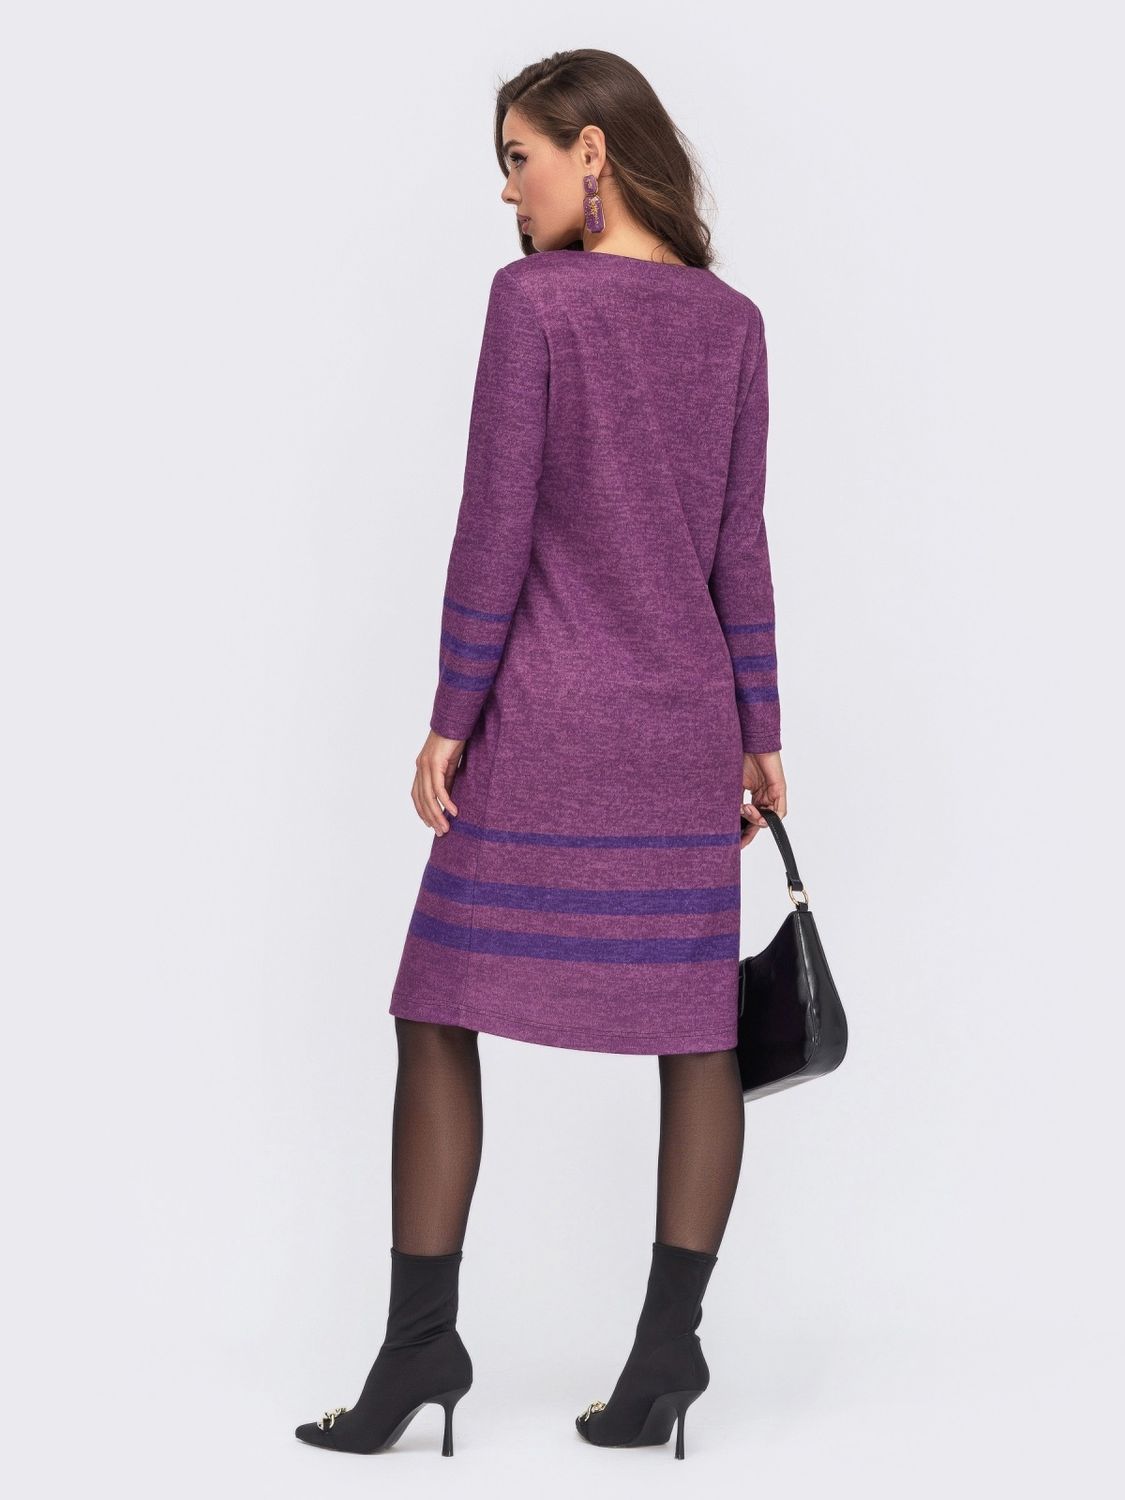 Повседневное платье прямого кроя из ангоры фиолетовое - фото